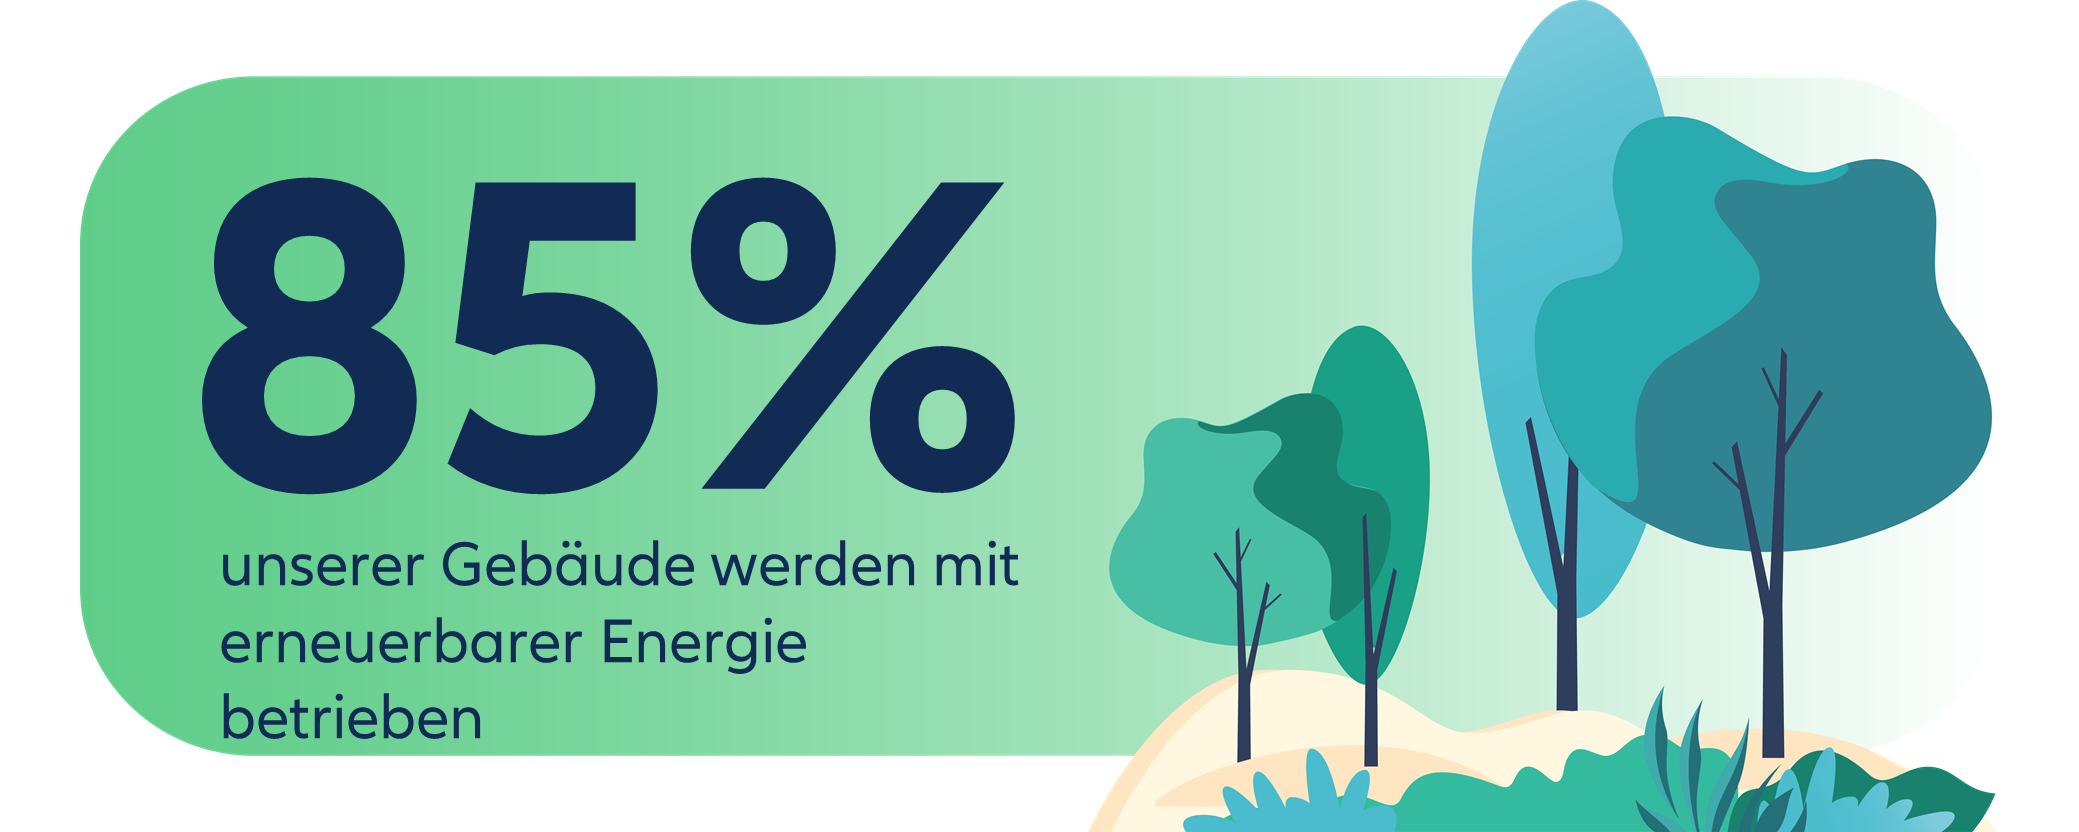 Allianz Partners nutzt nachhaltige Energien